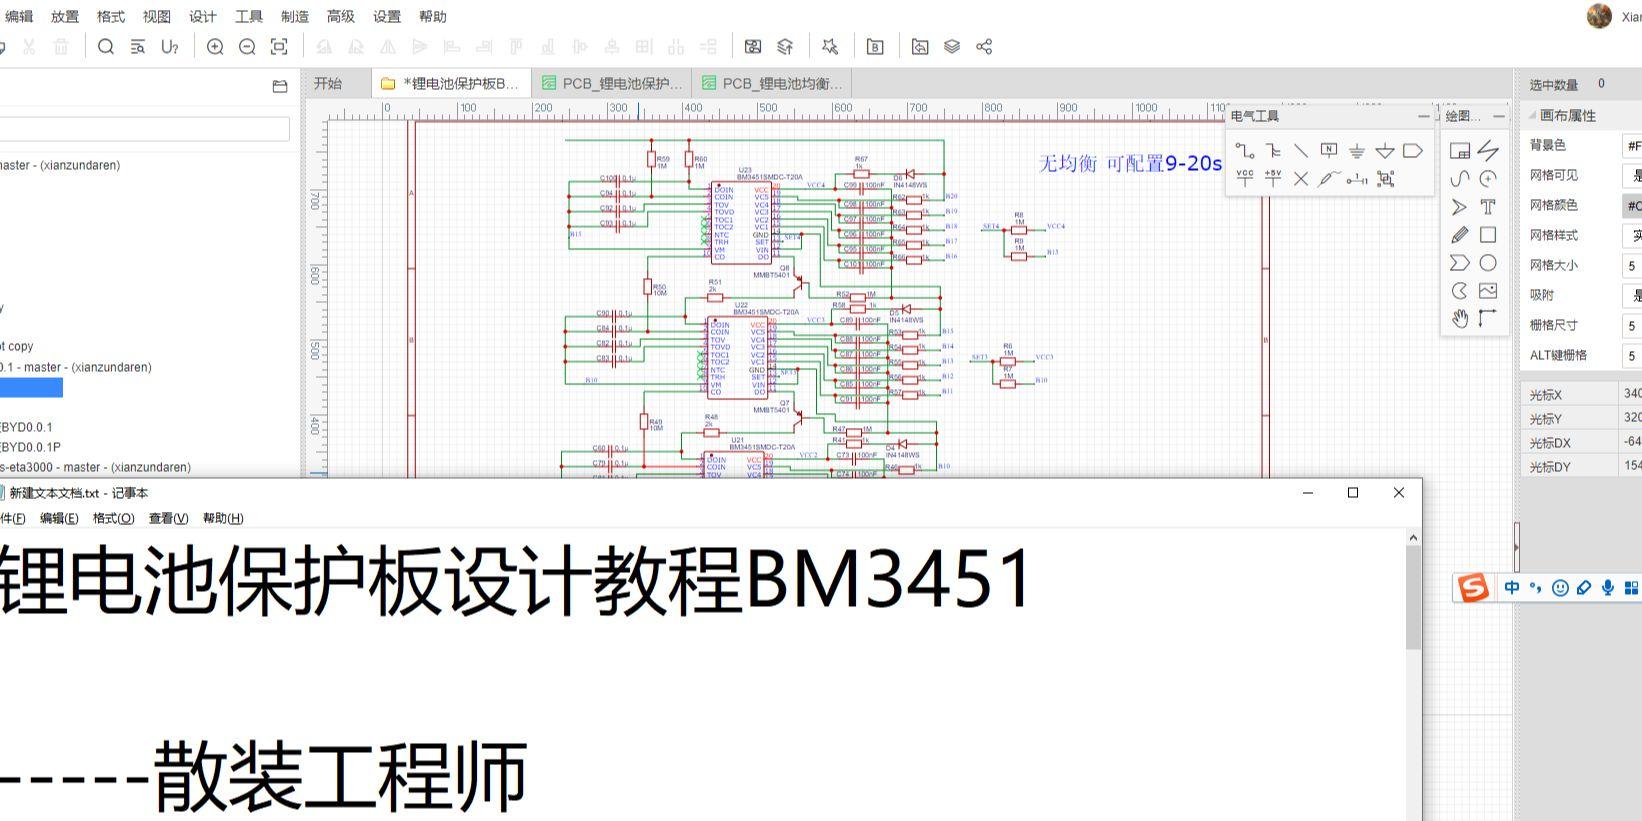 锂电池保护板设计教程基于比亚迪BM3451芯片